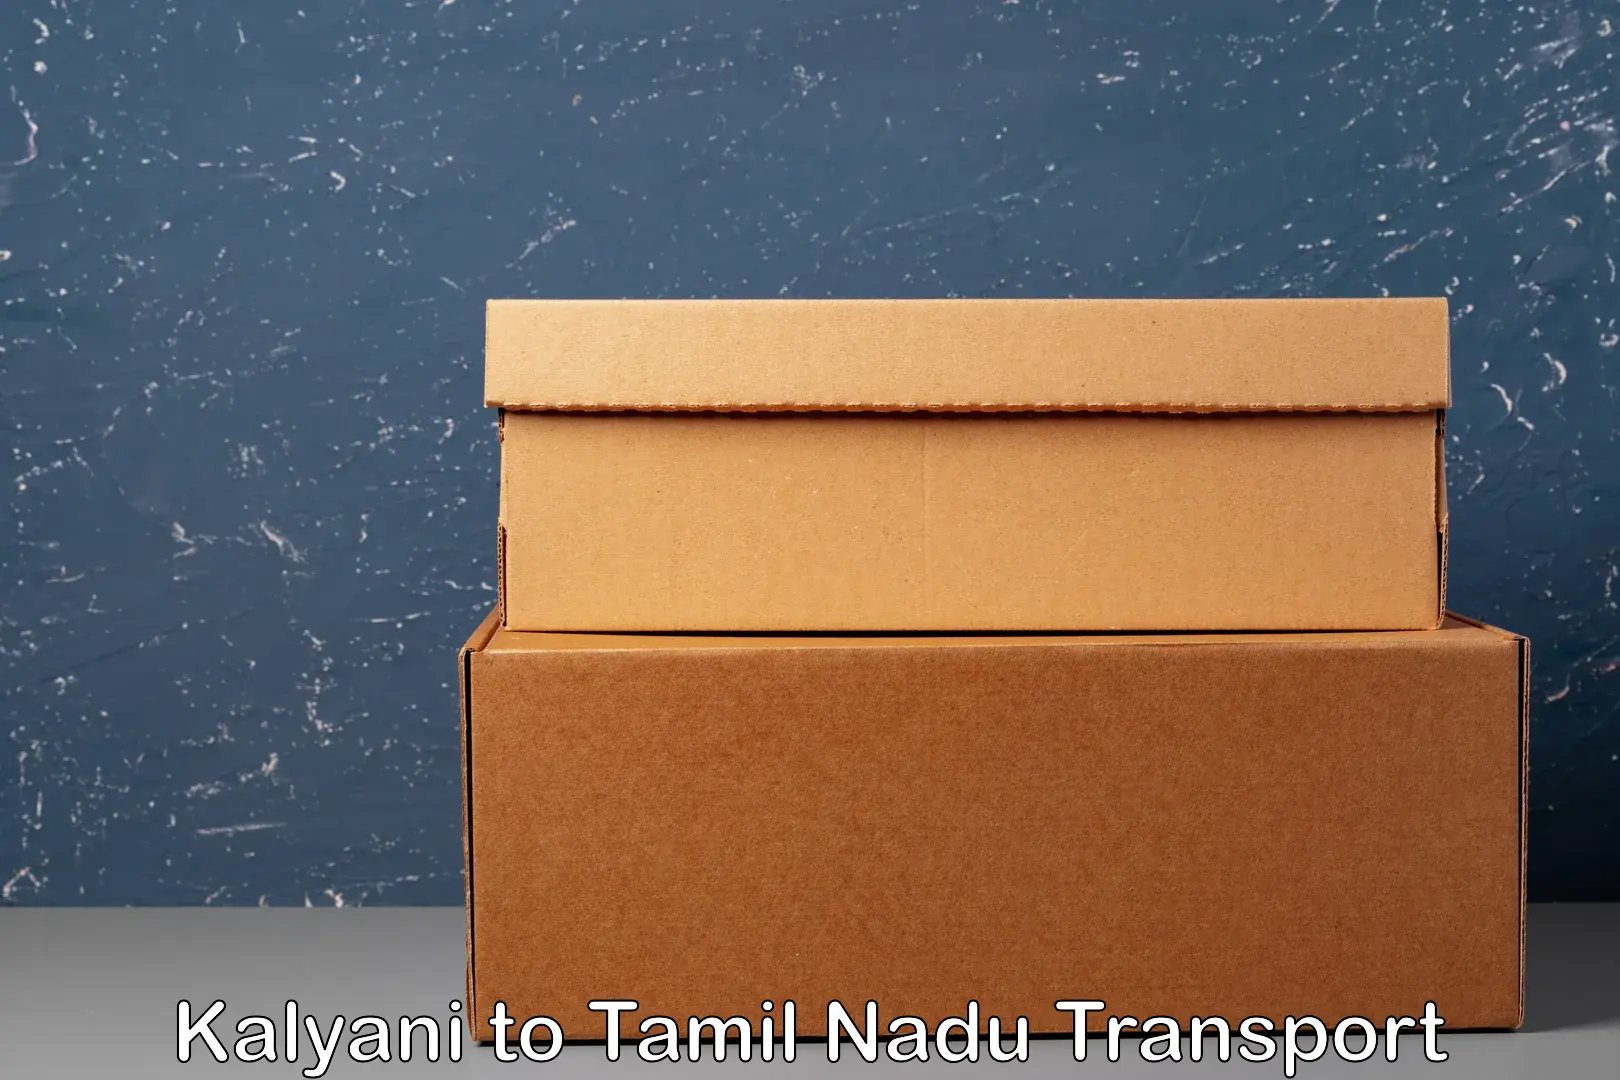 Shipping partner Kalyani to Melur